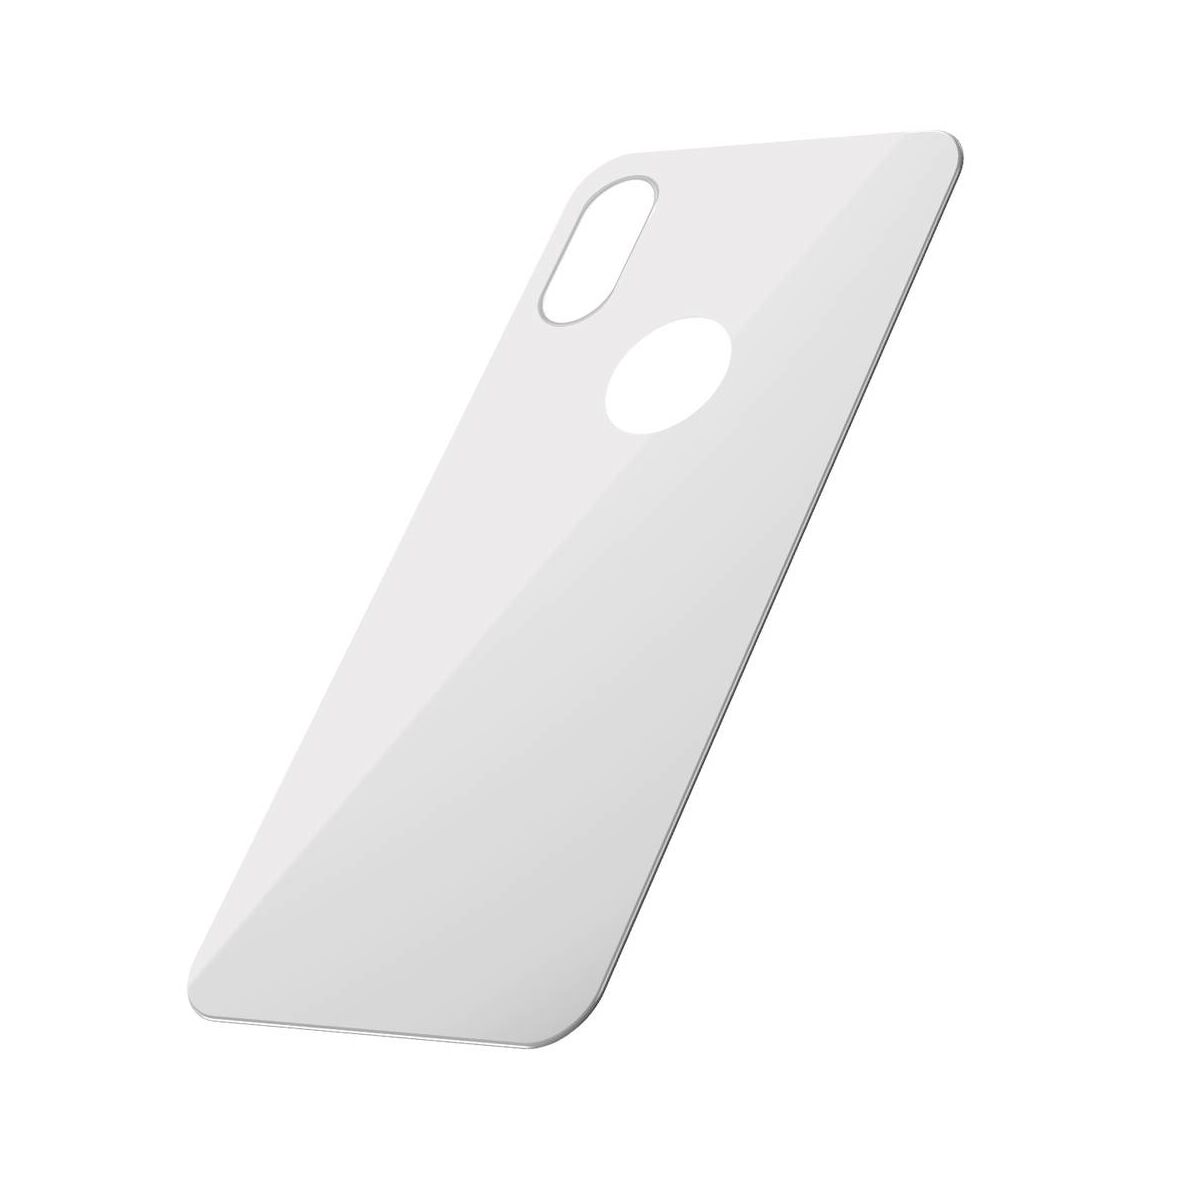 Kép 3/9 - Baseus iPhone XS (5.8") 0.3 mm, teljes lefedésre edzett üveg hátlap védő fólia, fehér (SGAPIPH58-BM02)